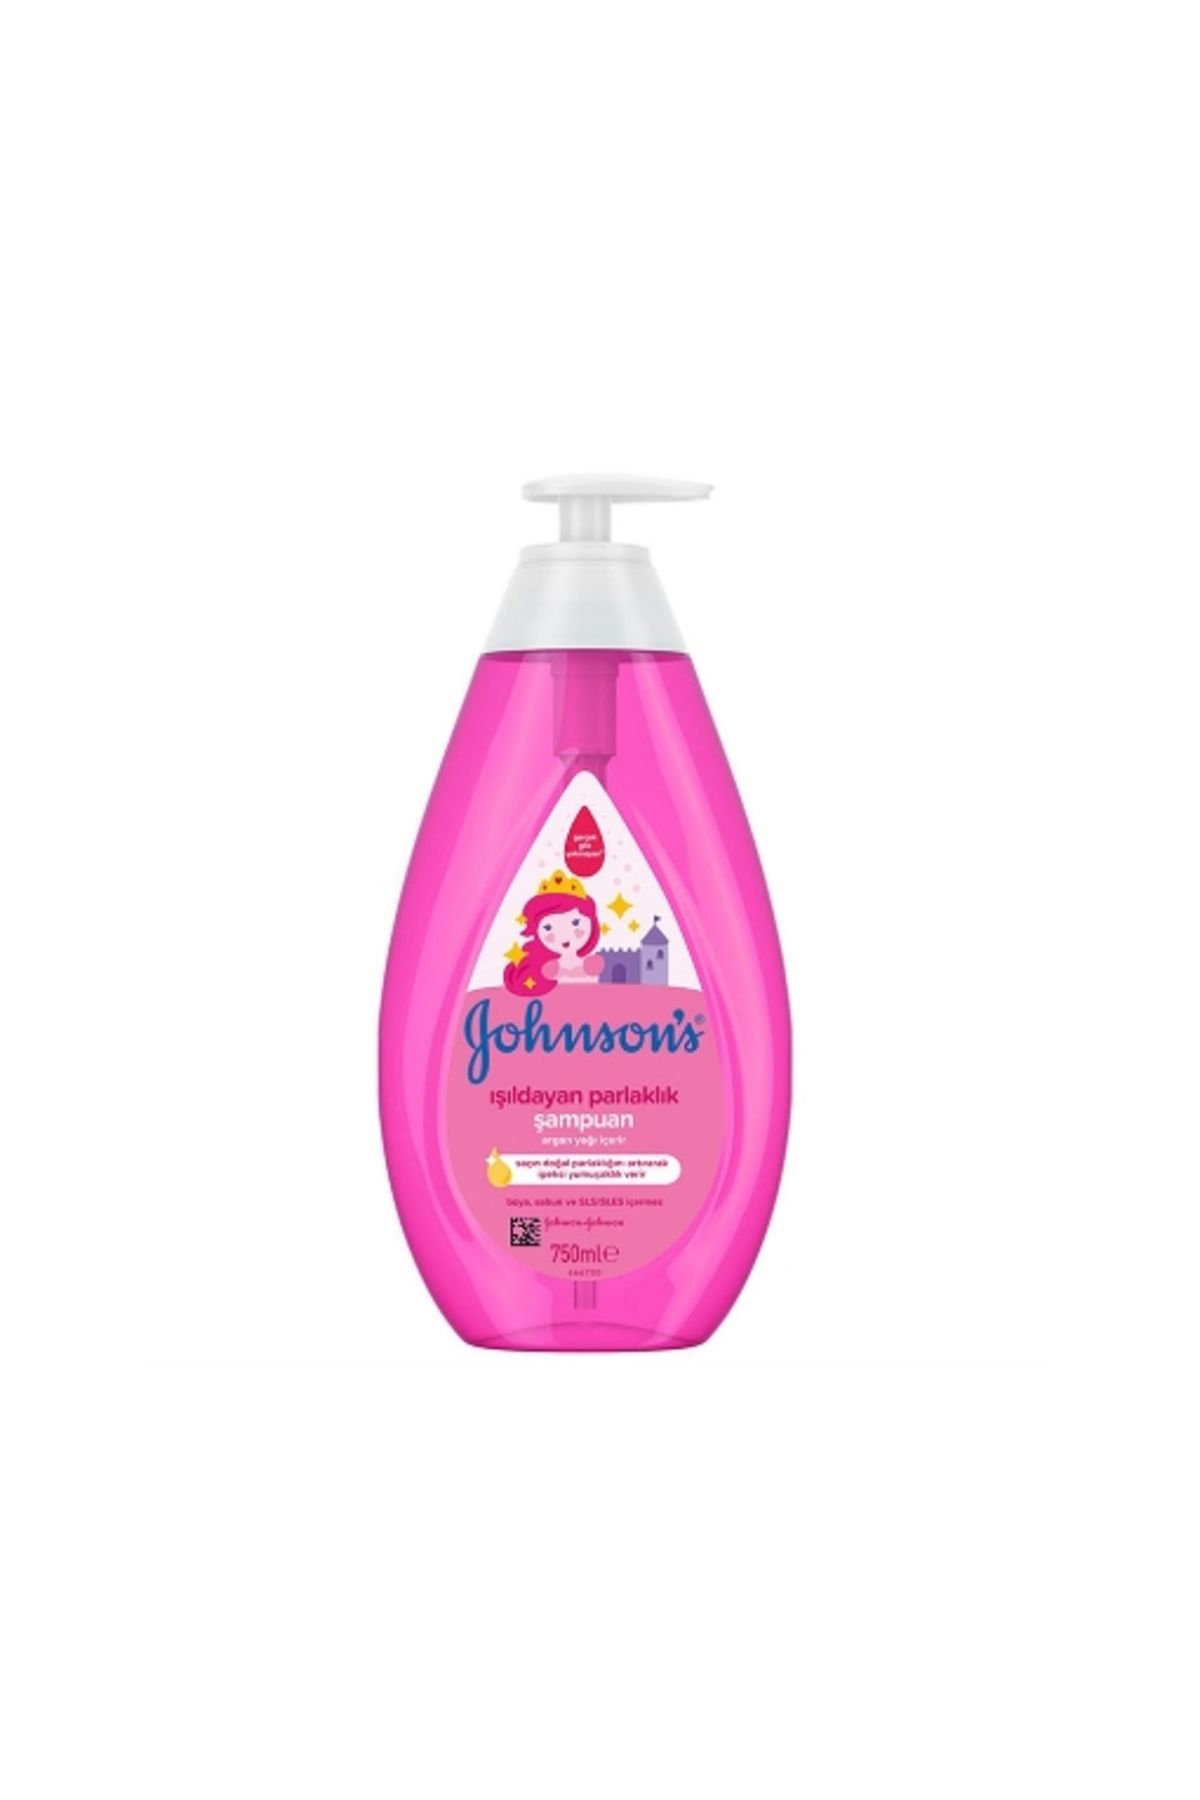 Johnson's Baby Jb Şampuan 750 Ml. Işıldayan Parlaklık (24'LÜ)